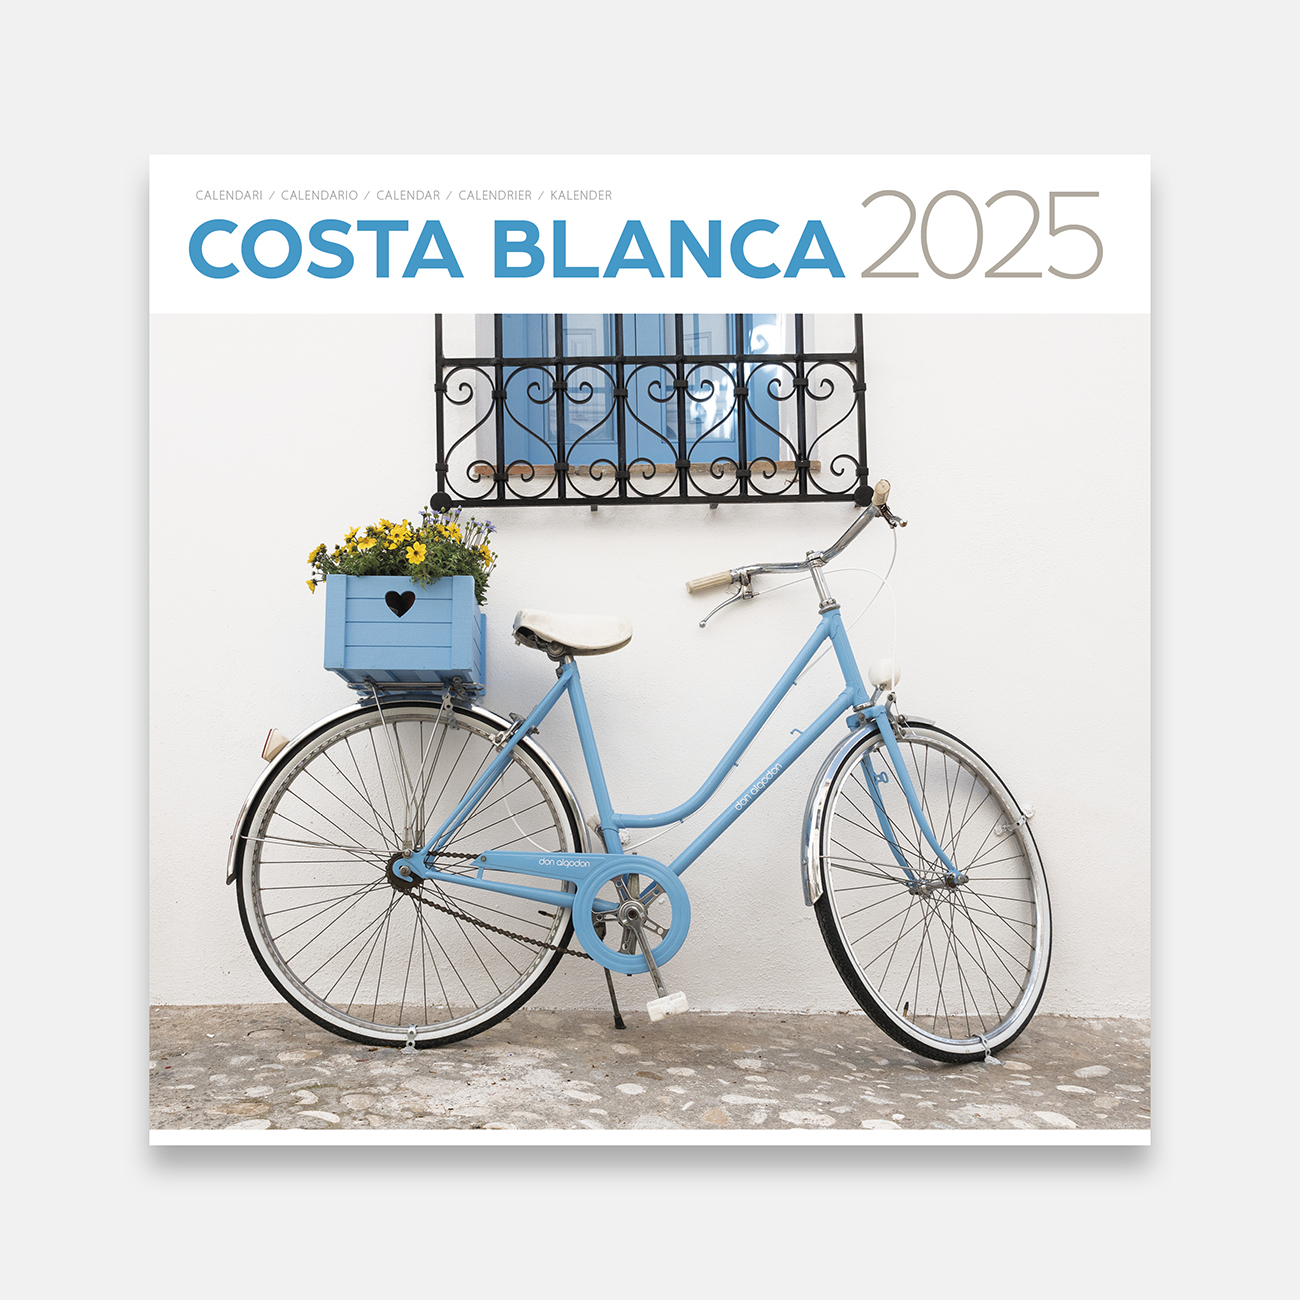 Calendrier 2025 Costa Blanca 25bl a calendario pared 2025 costa blanca